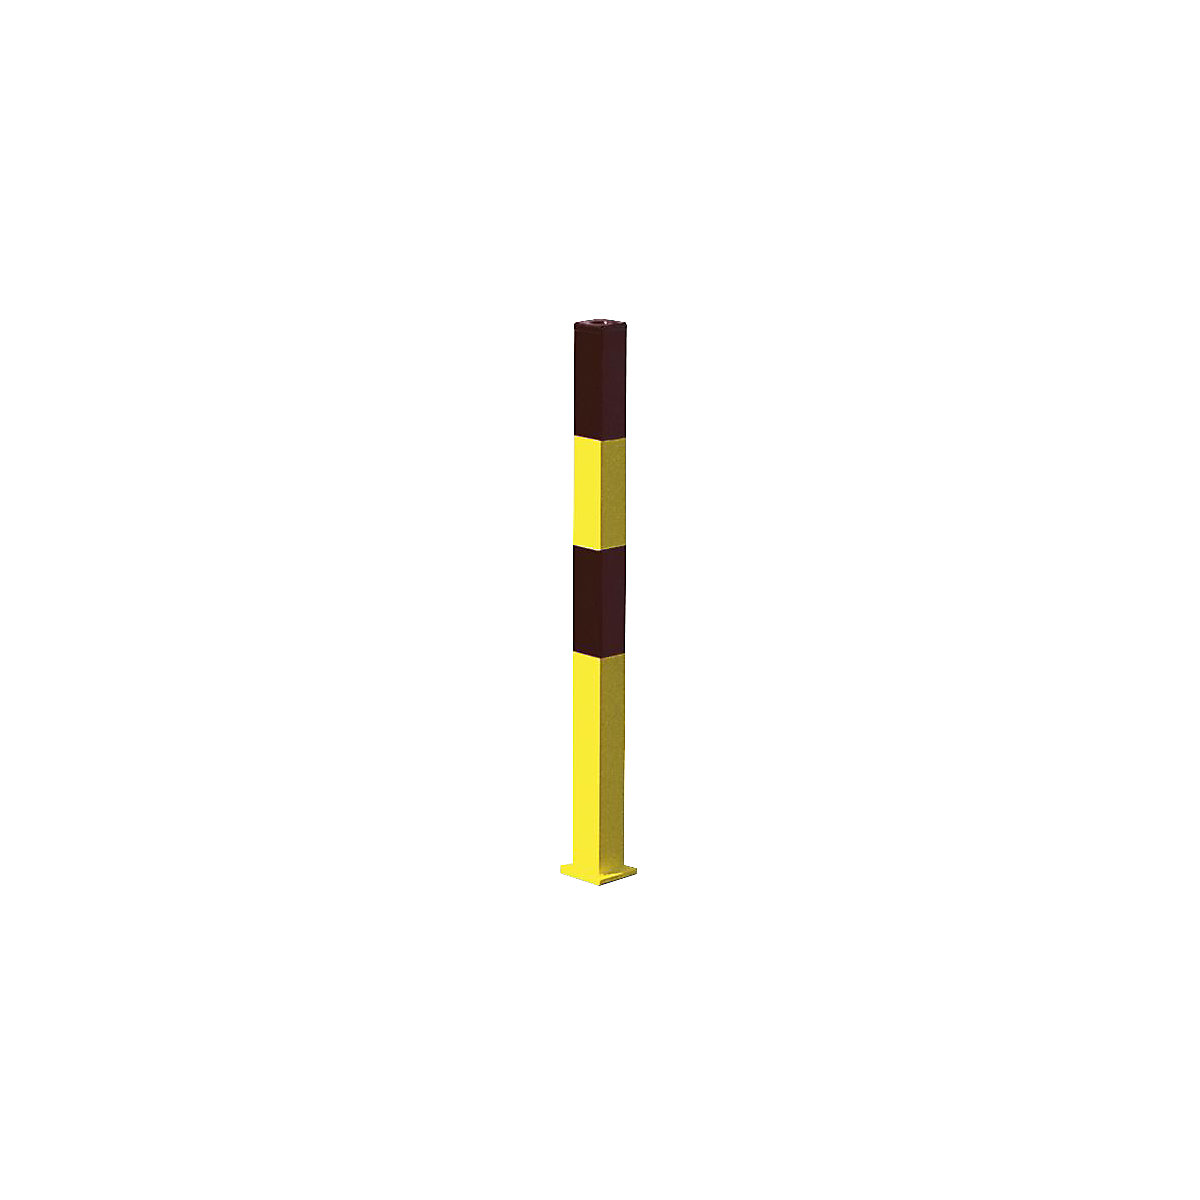 Čelični stup za ograđivanje, za pričvršćivanje tiplama, 70 x 70 mm, u crno-žutoj boji, 2 ušice lanaca-8